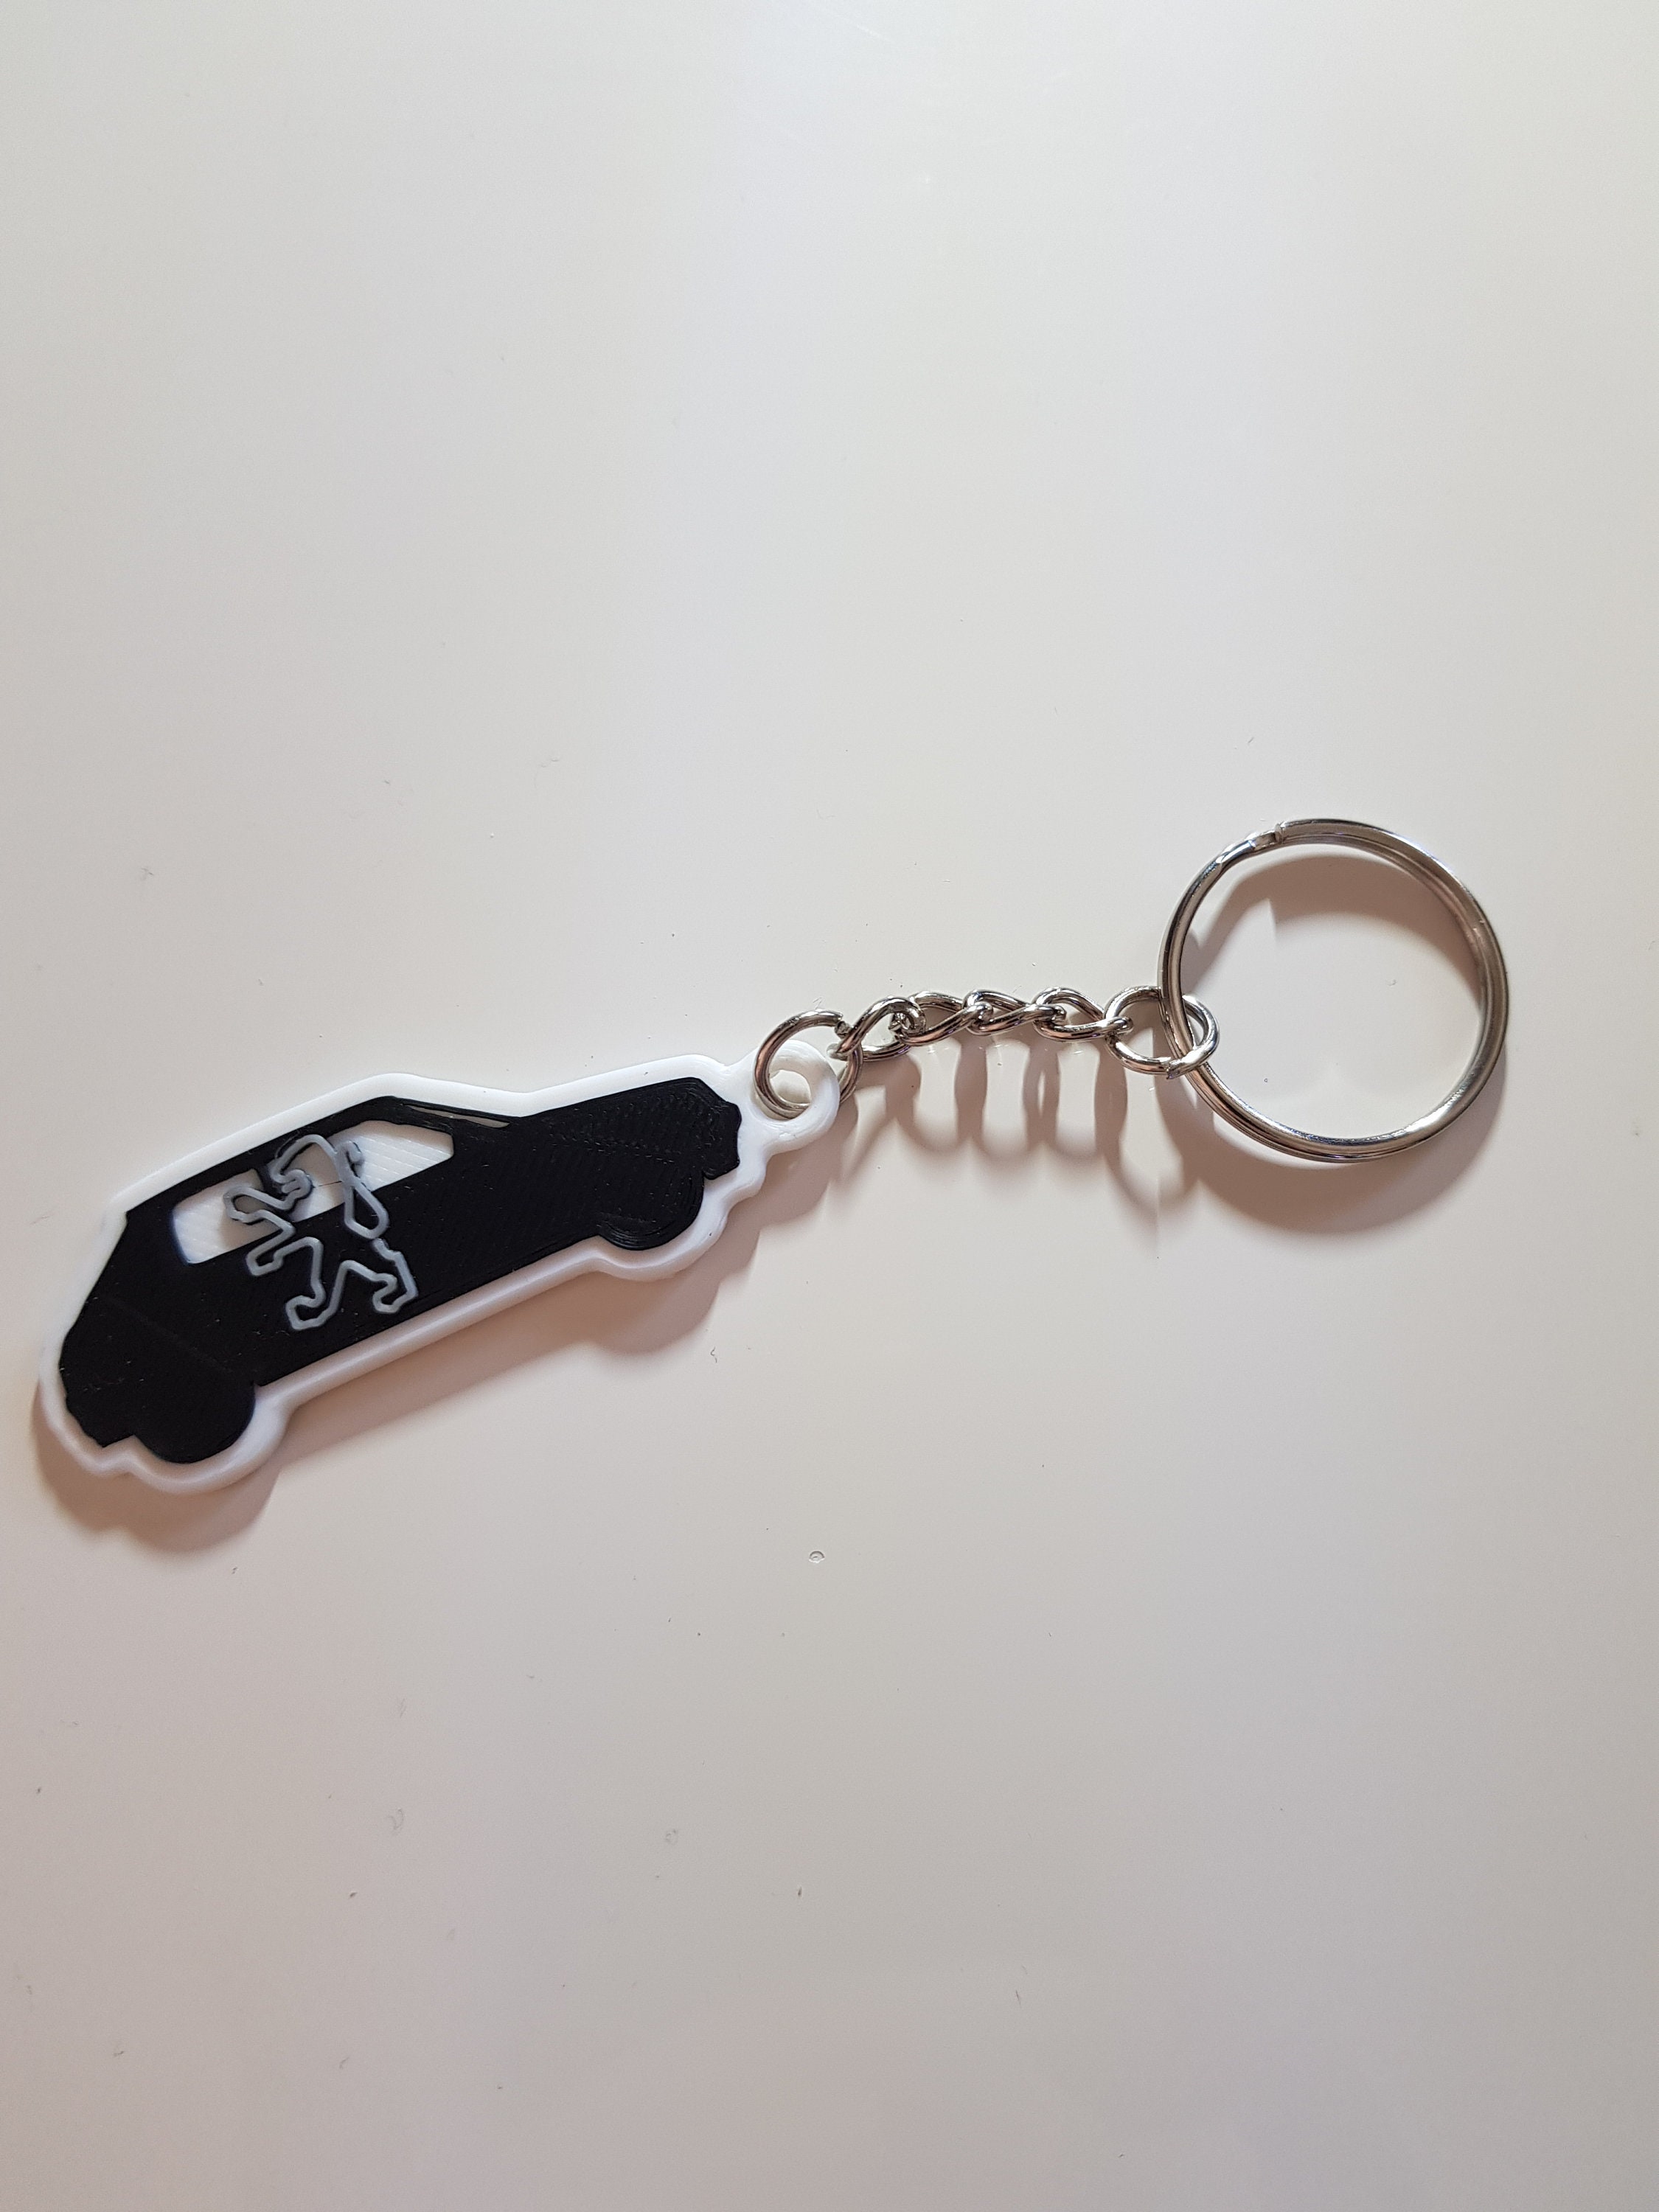 Porte-clés de voiture Peugeot 208 personnalisé, porte-clés en acier  inoxydable pour cadeau d'anniversaire avec texte individuel -  France